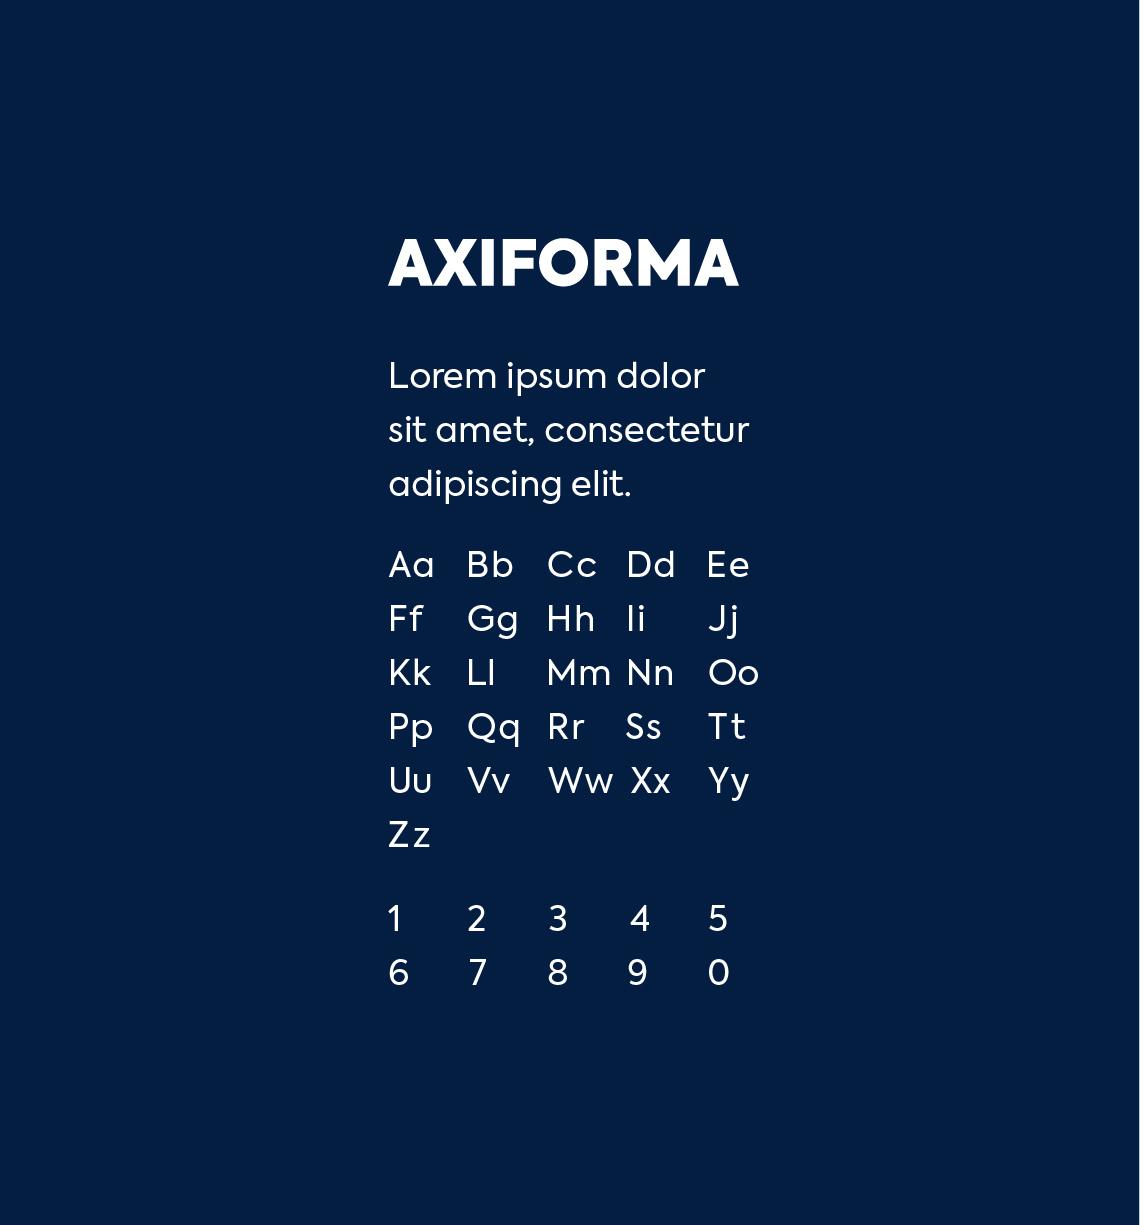 axiforma letter Premier Tech